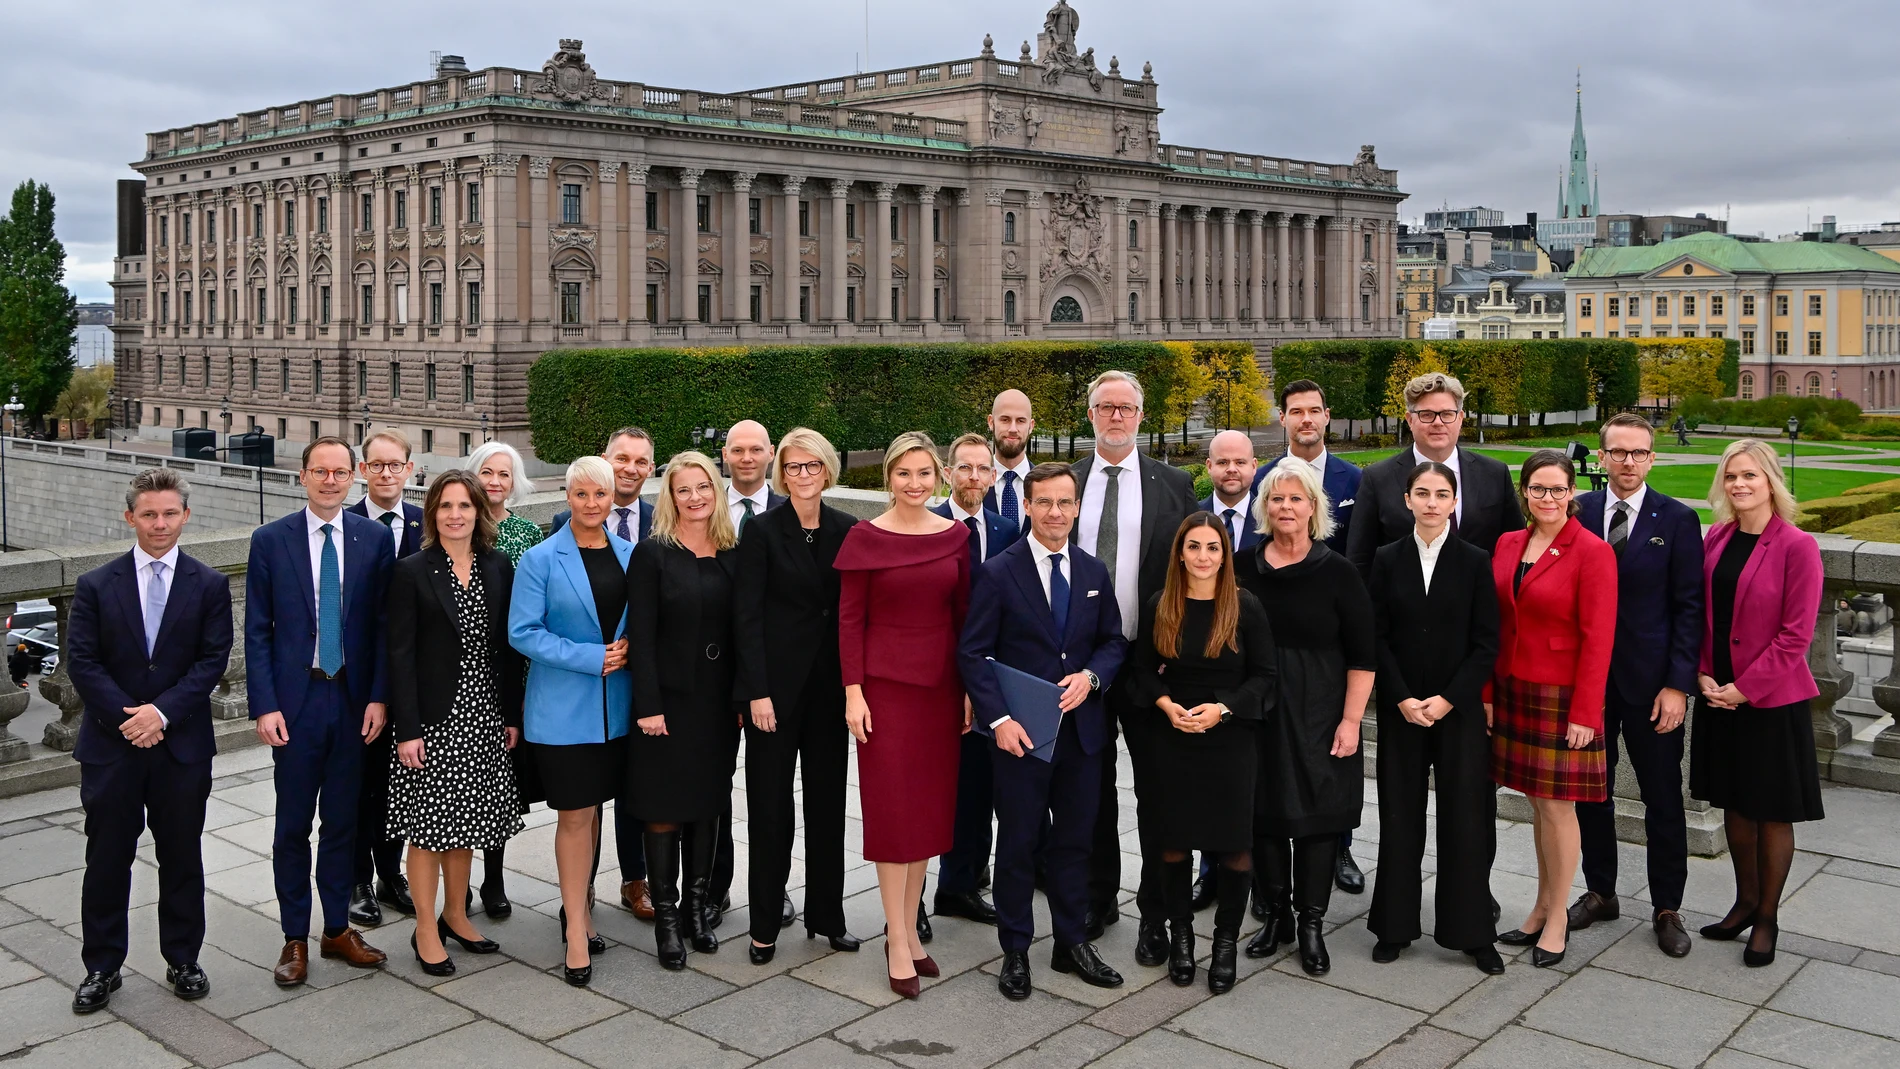 El nuevo Gobierno sueco (12 hombres y 11 mujeres) posa frente al Parlamento en Estocolmo